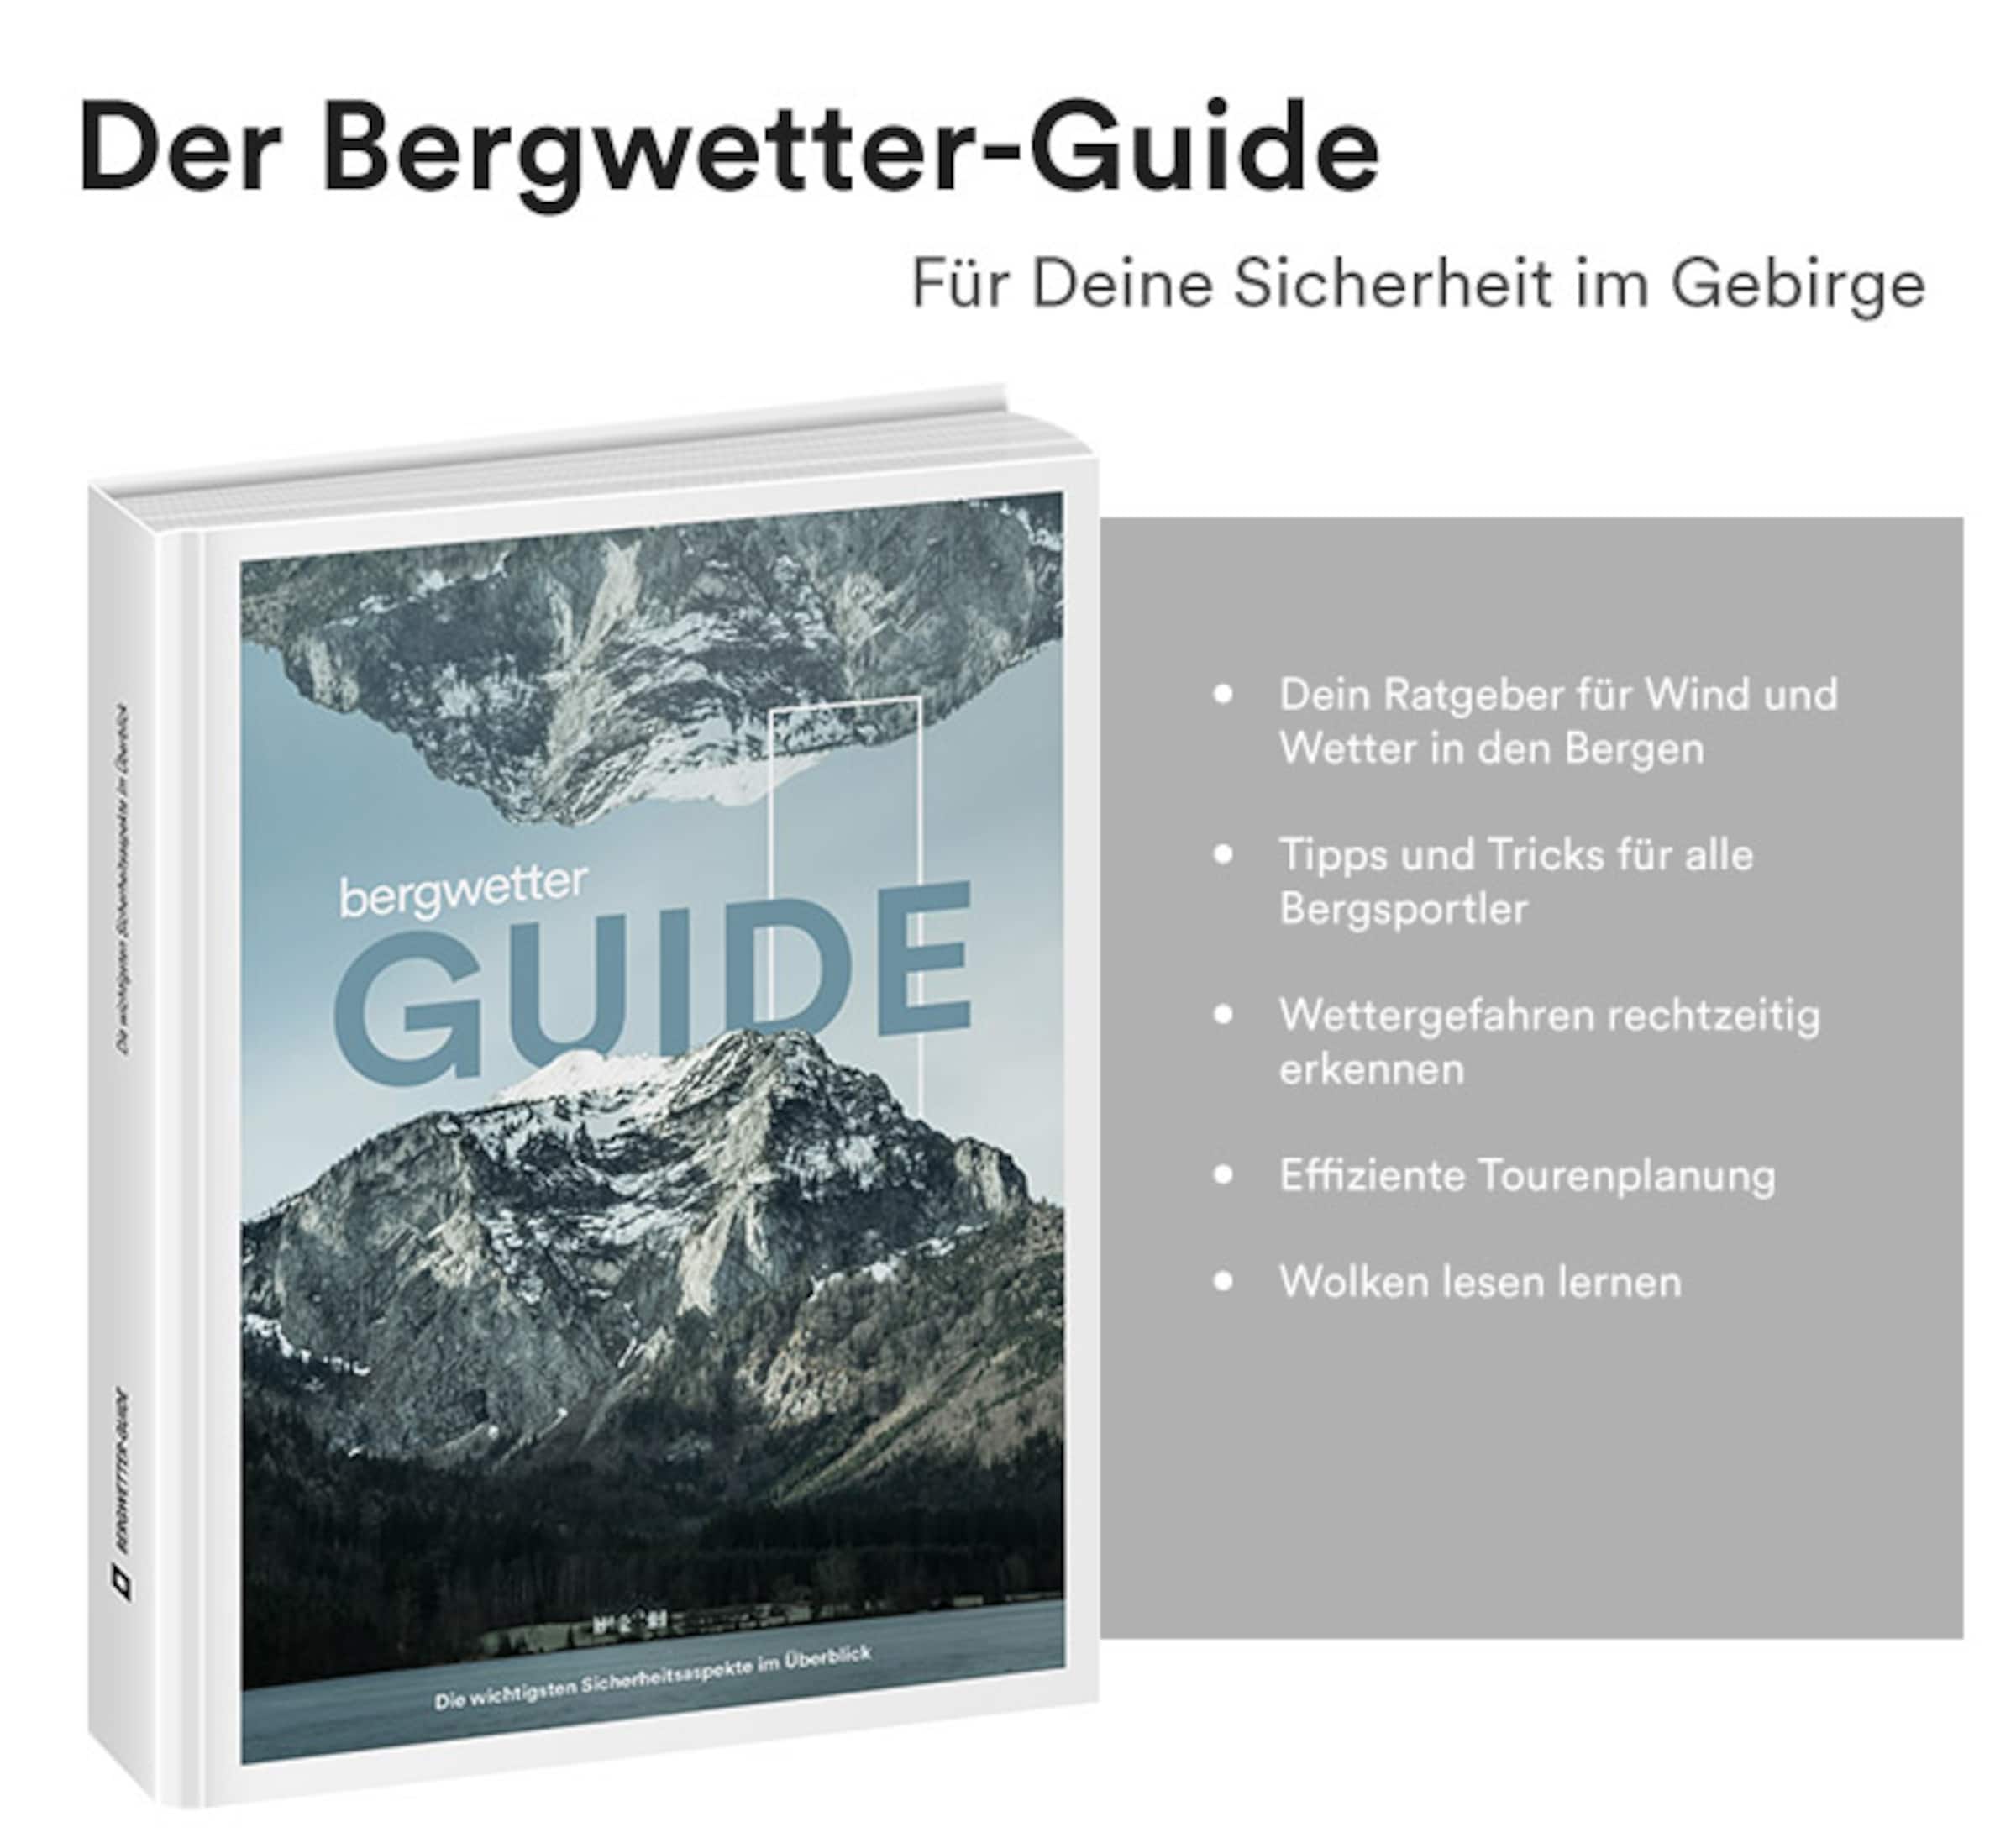 Der Bergwetter-Guide - Für Deine Sicherheit im Gebirge